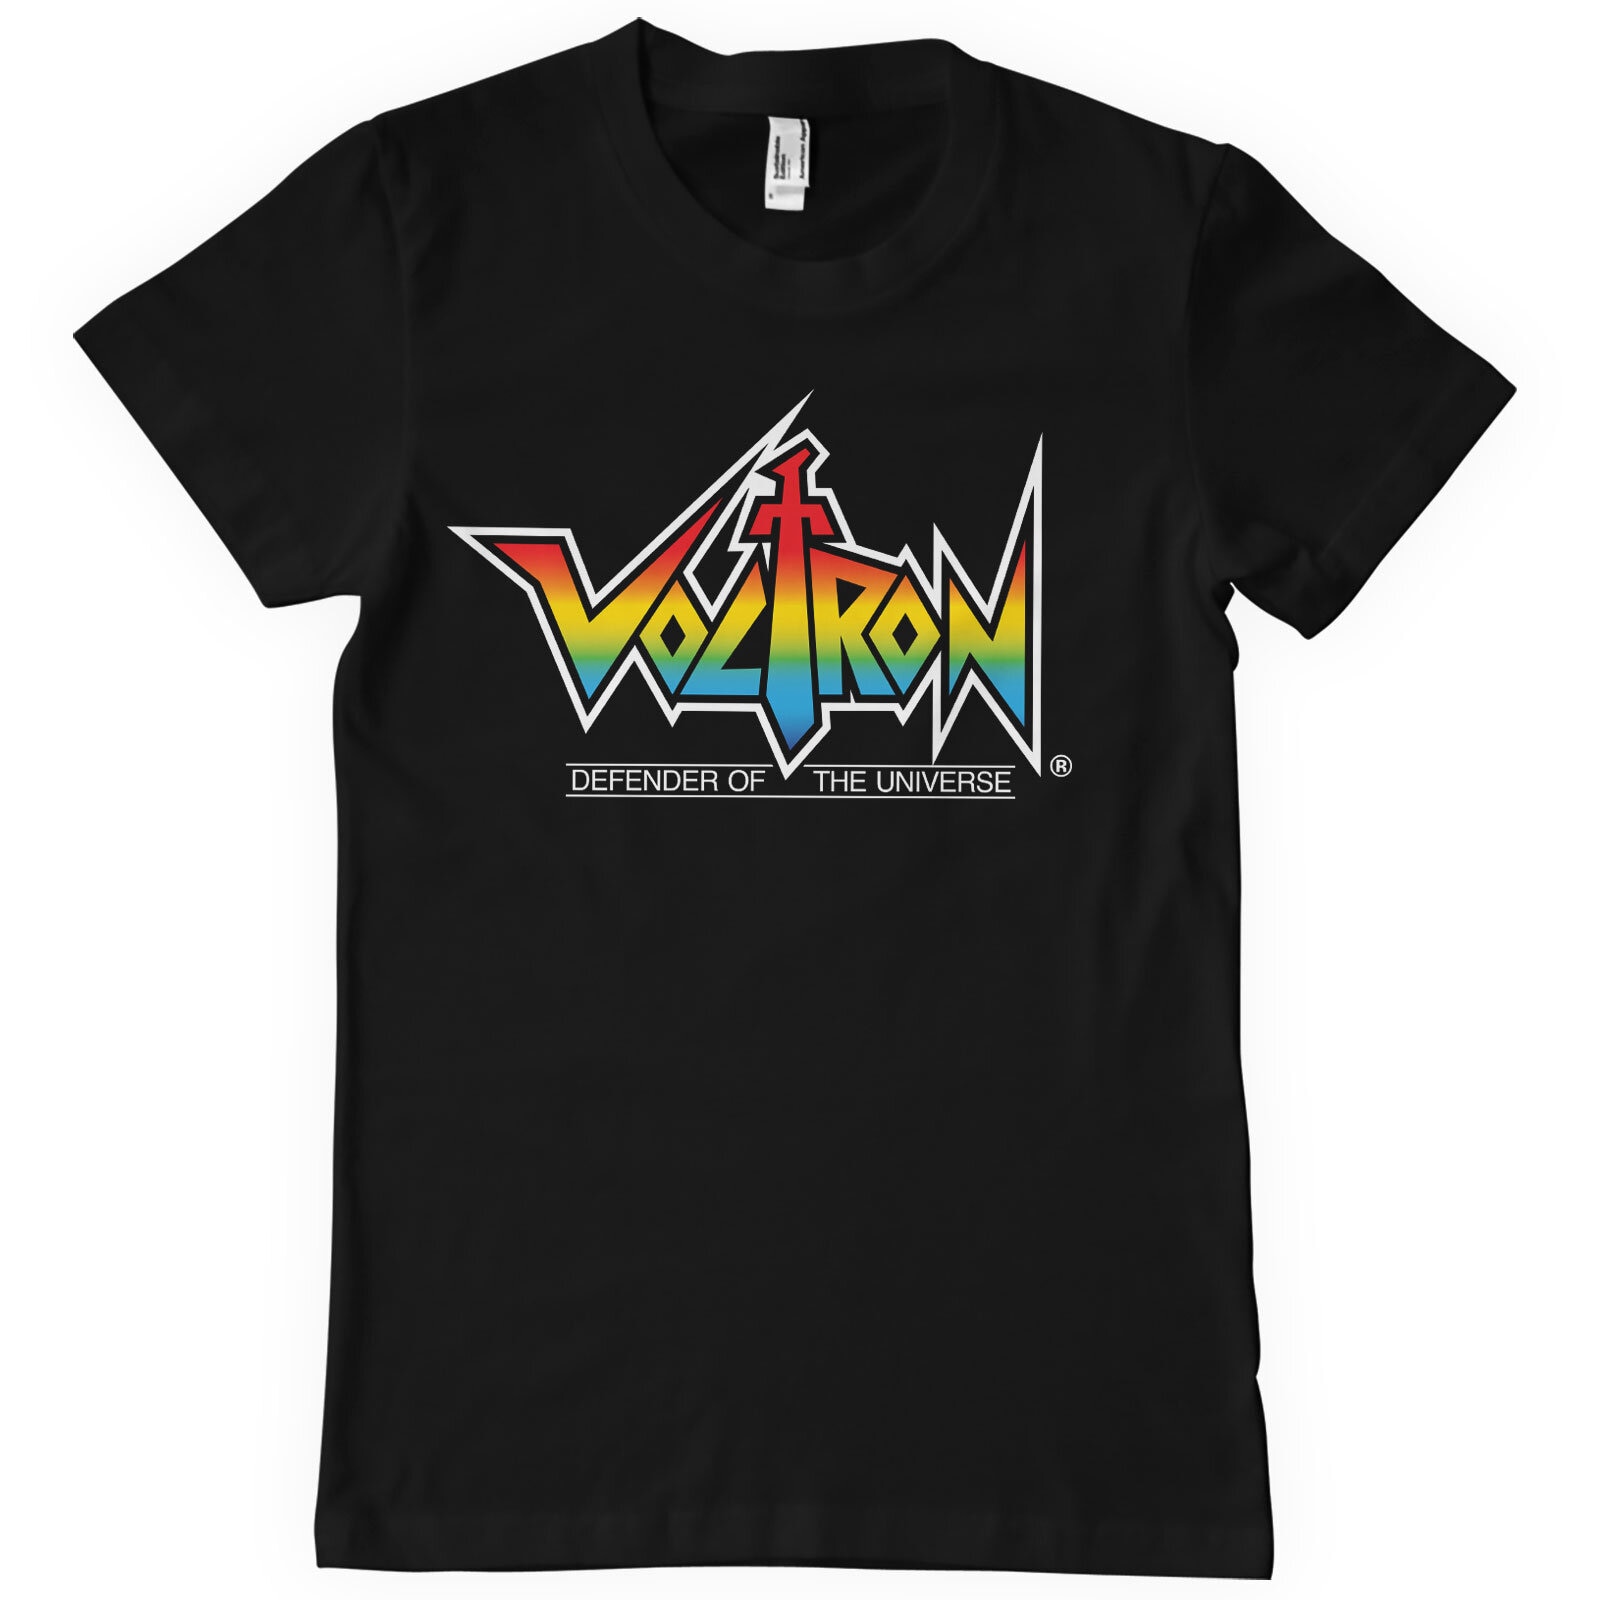 Voltron Logo T-Shirt